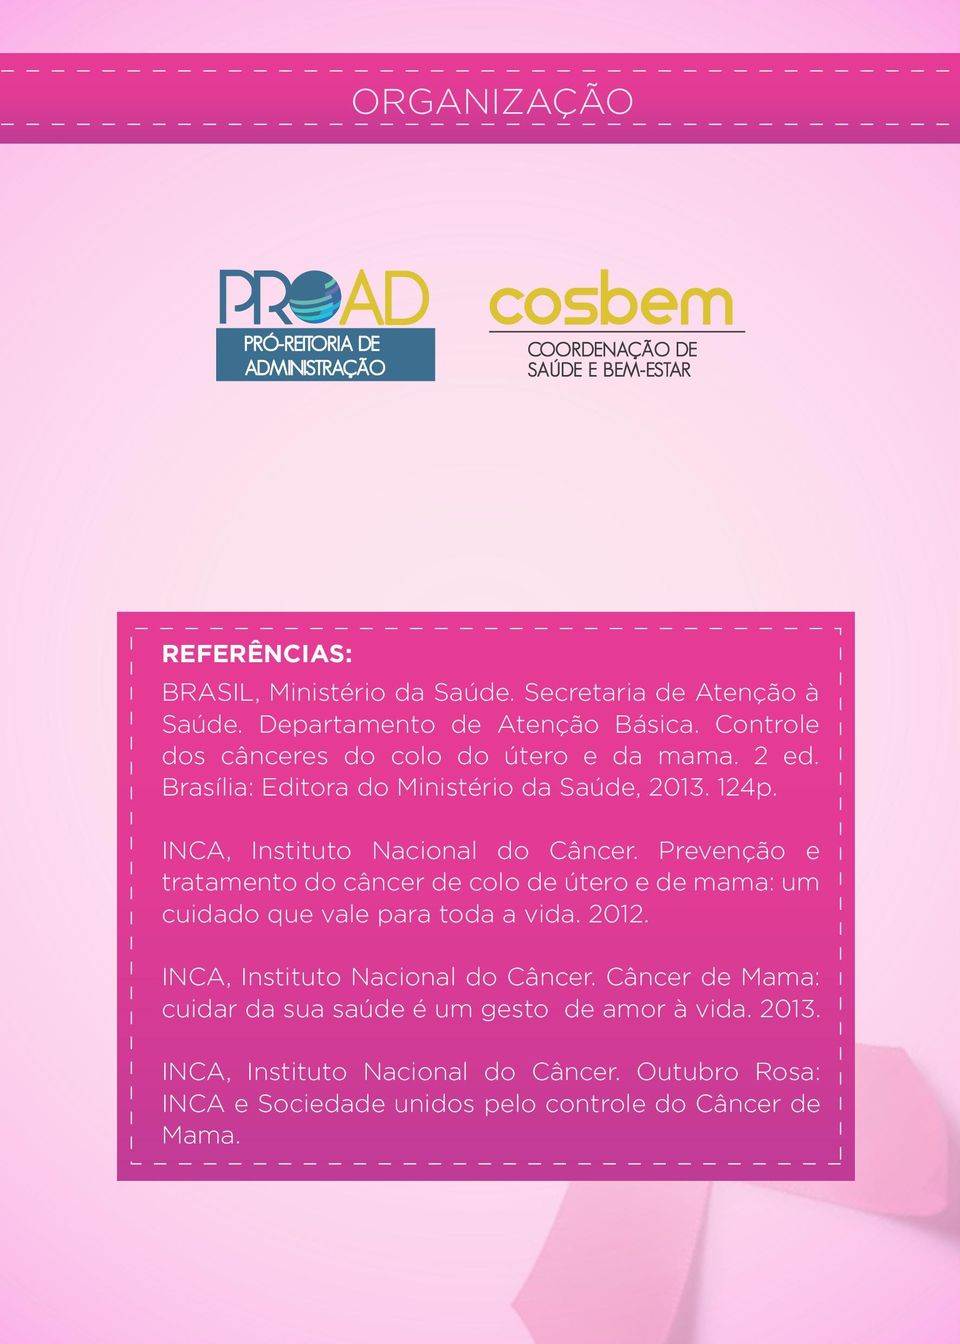 INCA, Instituto Nacional do Câncer. Prevenção e tratamento do câncer de colo de útero e de mama: um cuidado que vale para toda a vida. 2012.